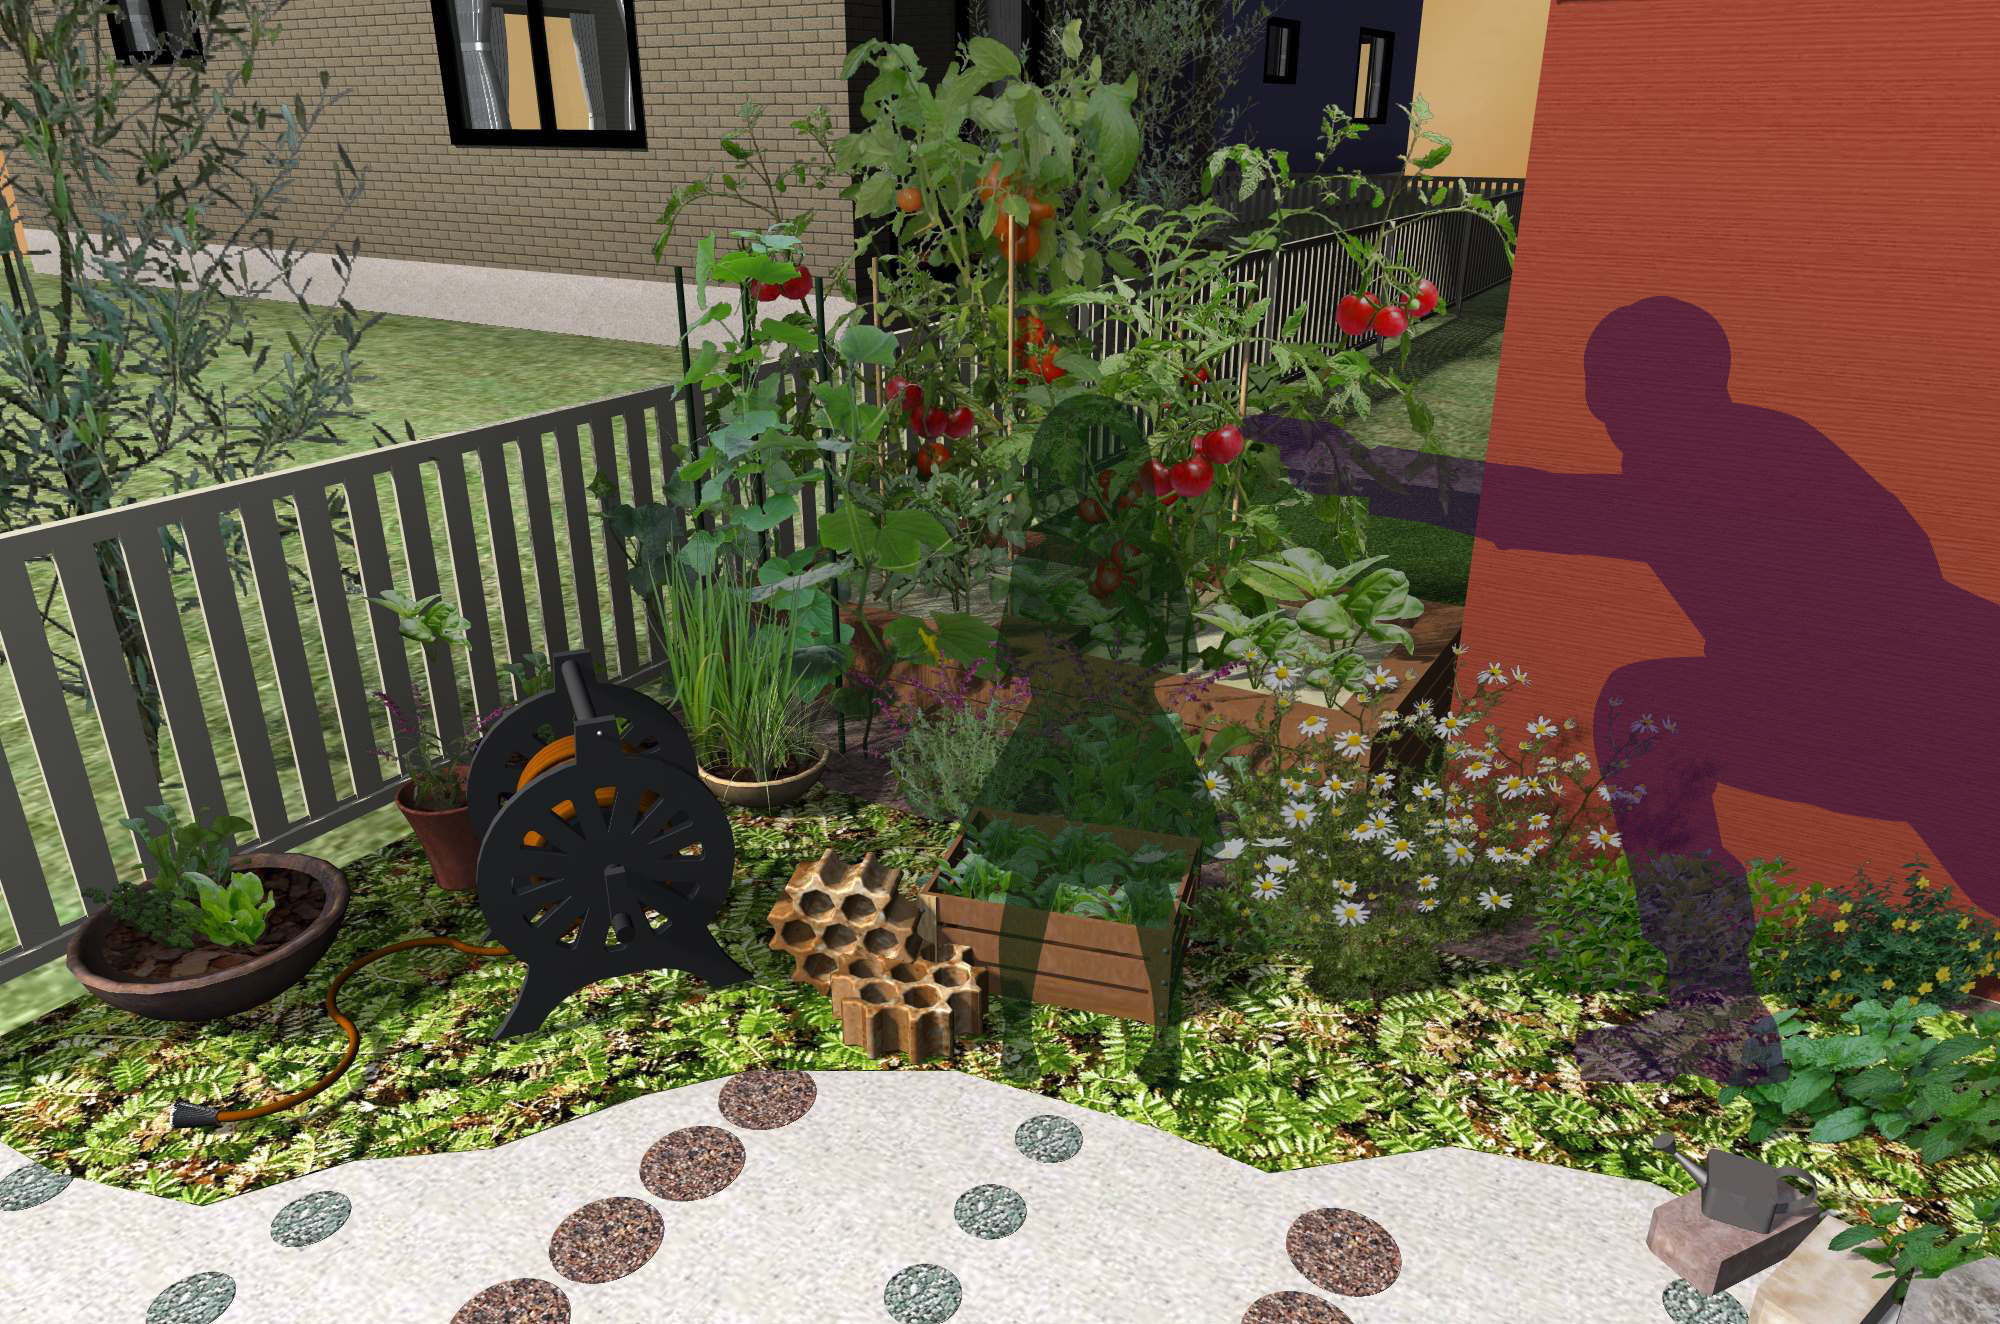 アルミと植物を融合したキッチンガーデン2 エクスプラット エクステリア ガーデンデザイン プラン検索サイト Rikcadデータ無料配信